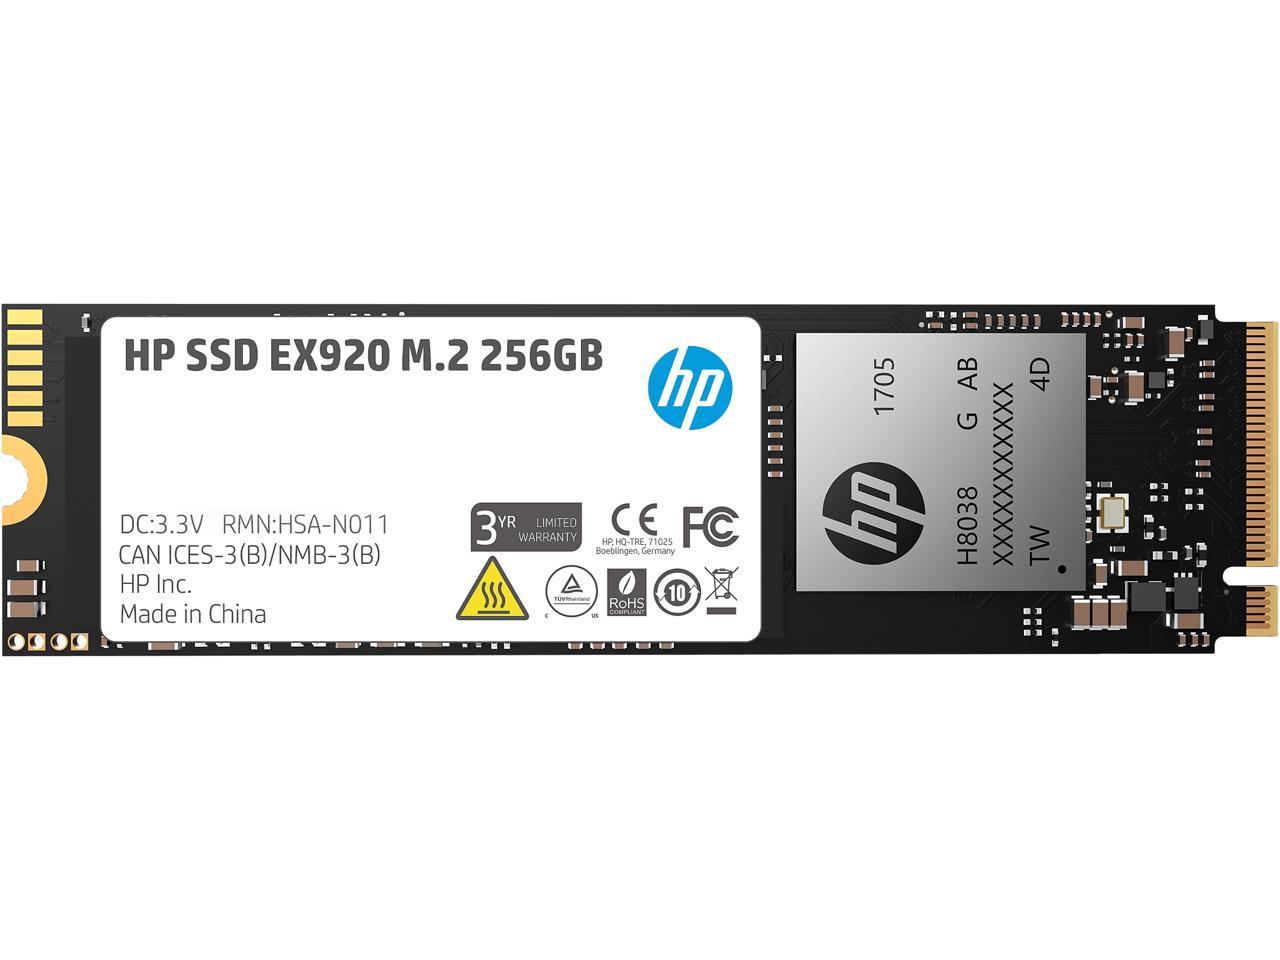 Ekstrem fattigdom mytologi Derfra HP EX920 M.2 256GB PCIe 3.0 x4 NVMe 3D TLC NAND Internal Solid State Drive ( SSD) 2YY45AA#ABC - Newegg.com